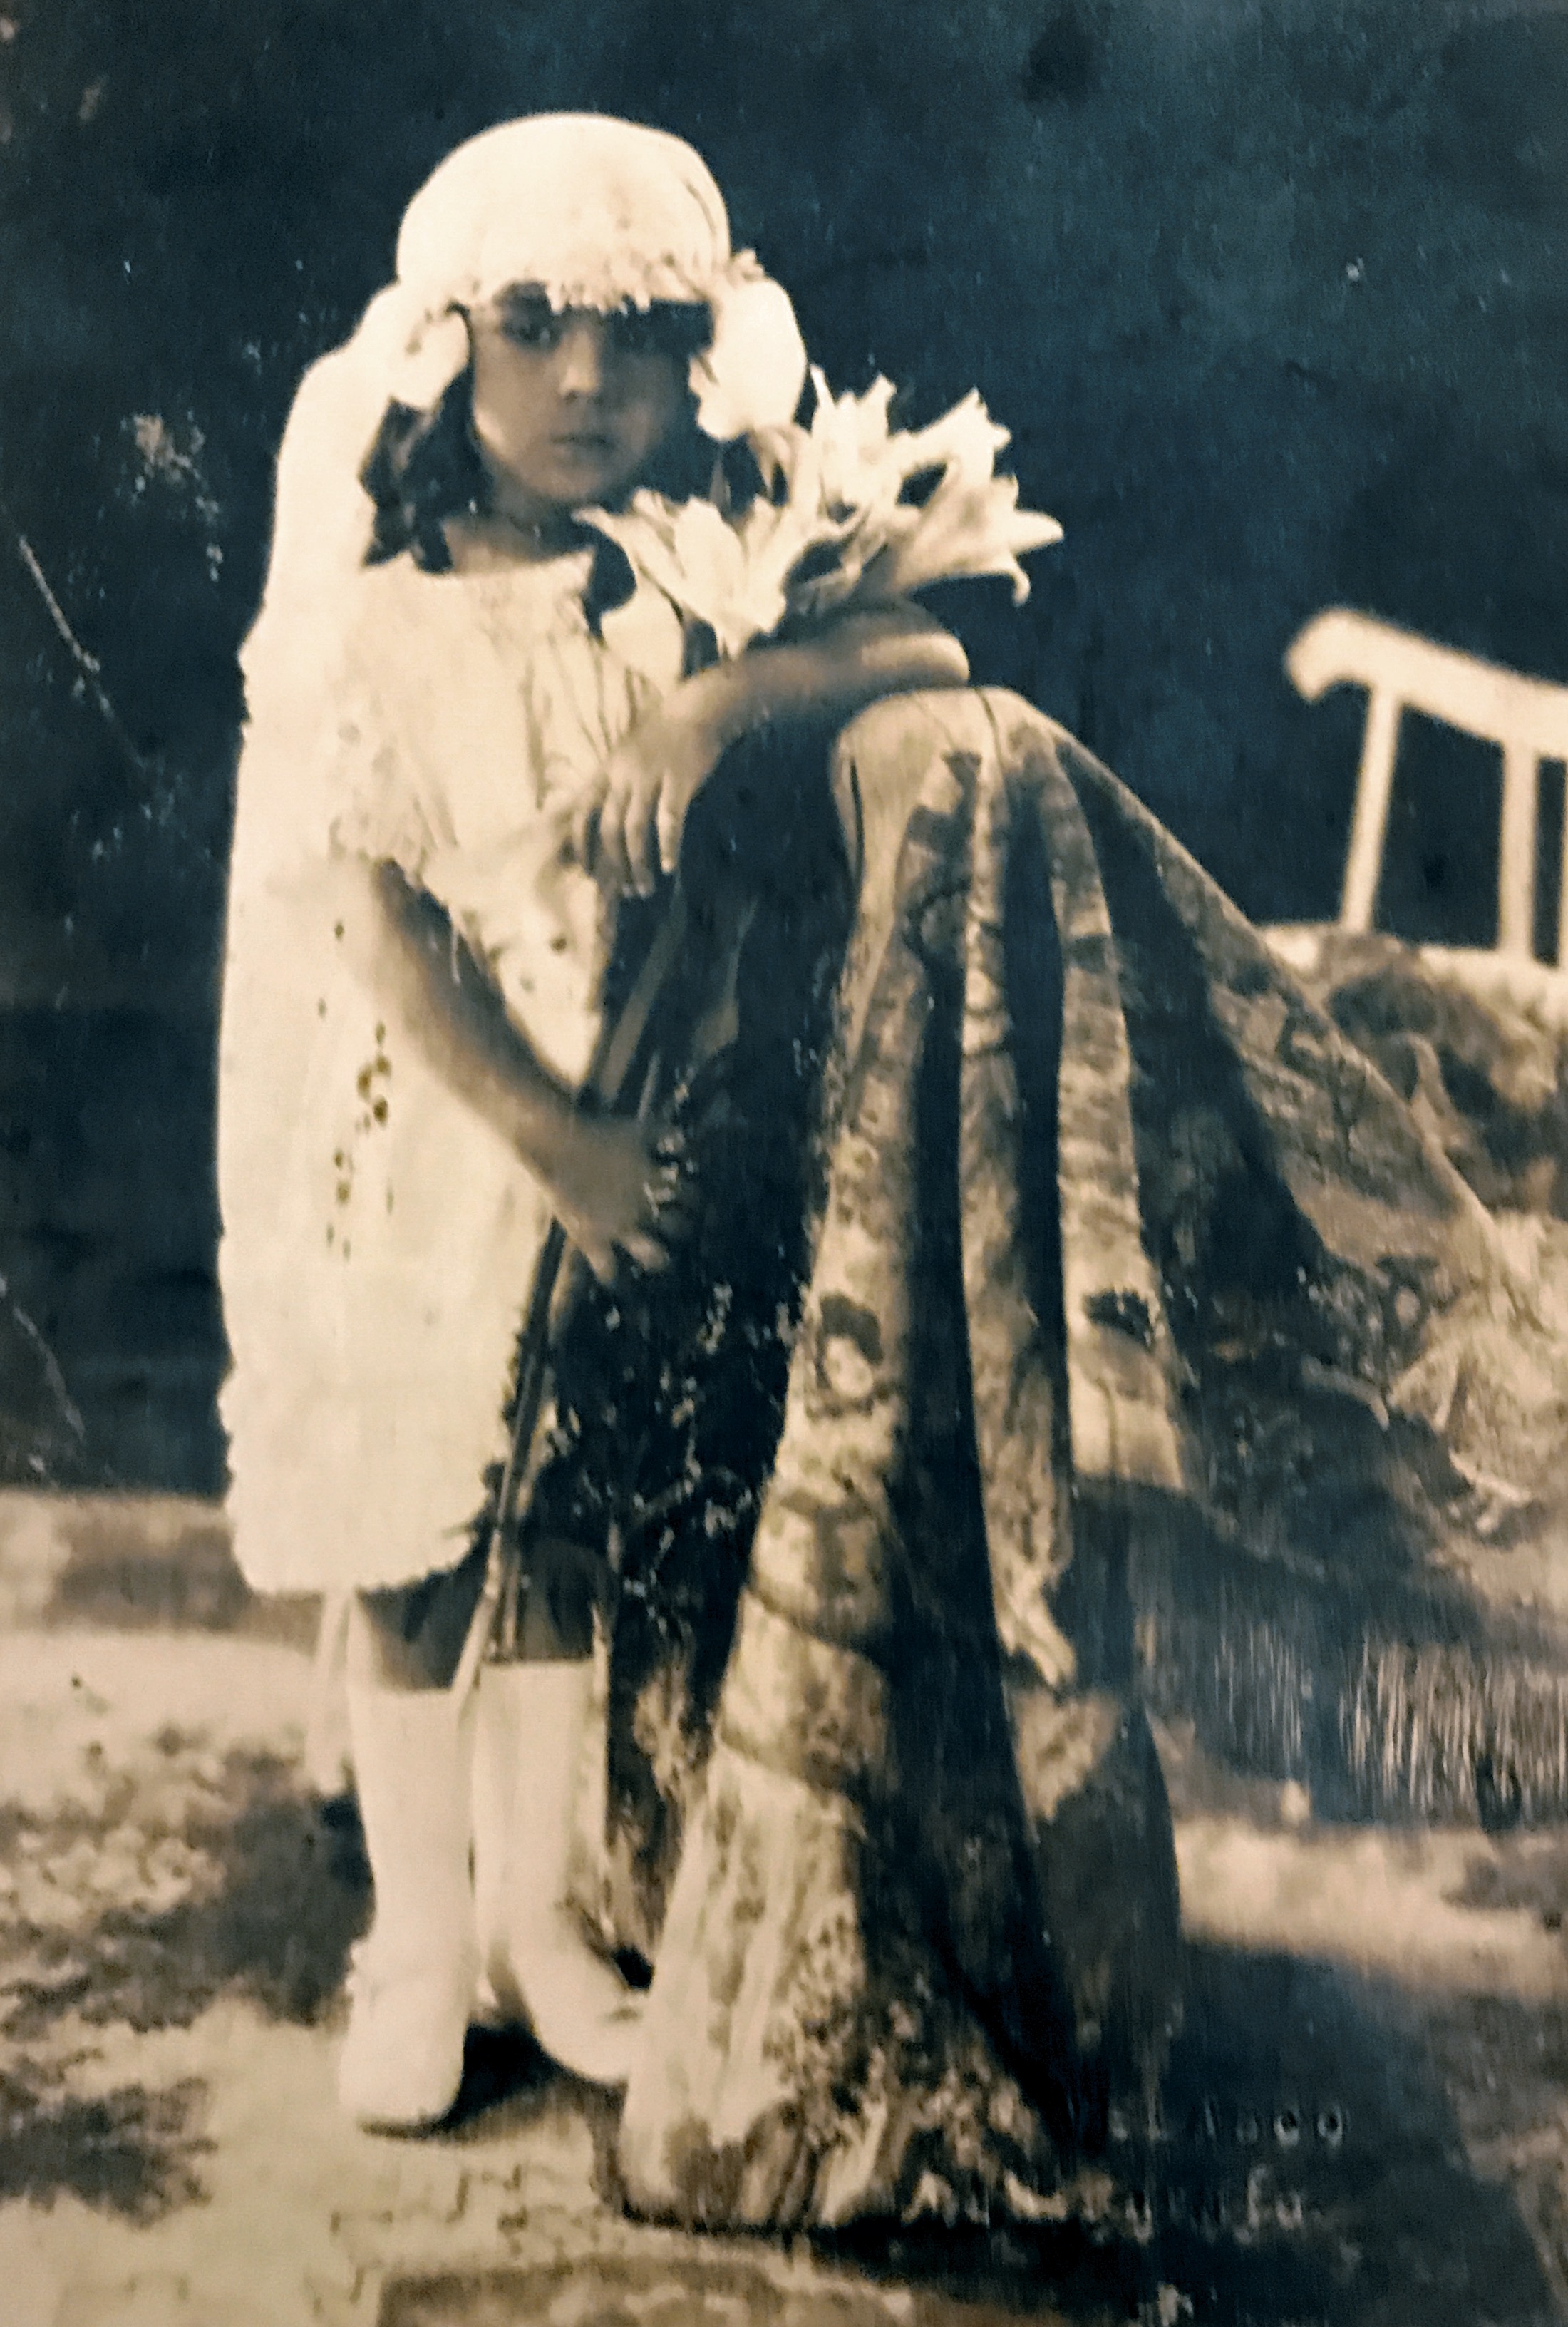 Anita a la edad de cuatro años (1924).
Esta foto fue un regalo para su abuelo materno